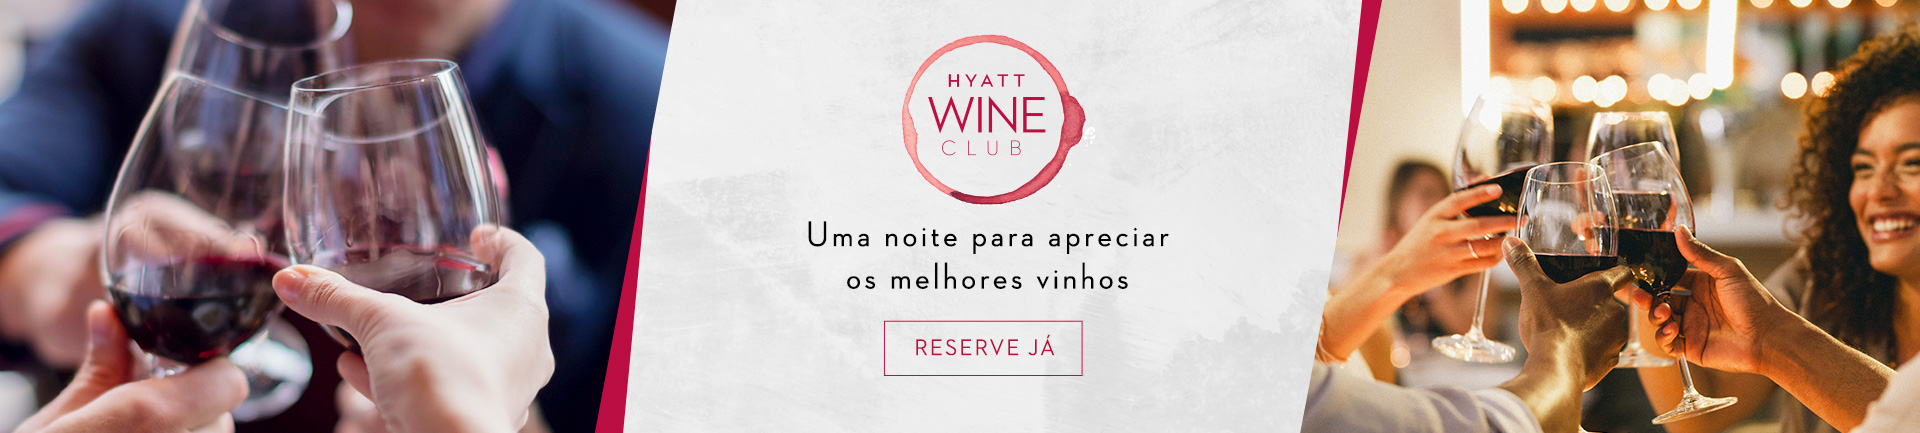 Hyatt Wine Club